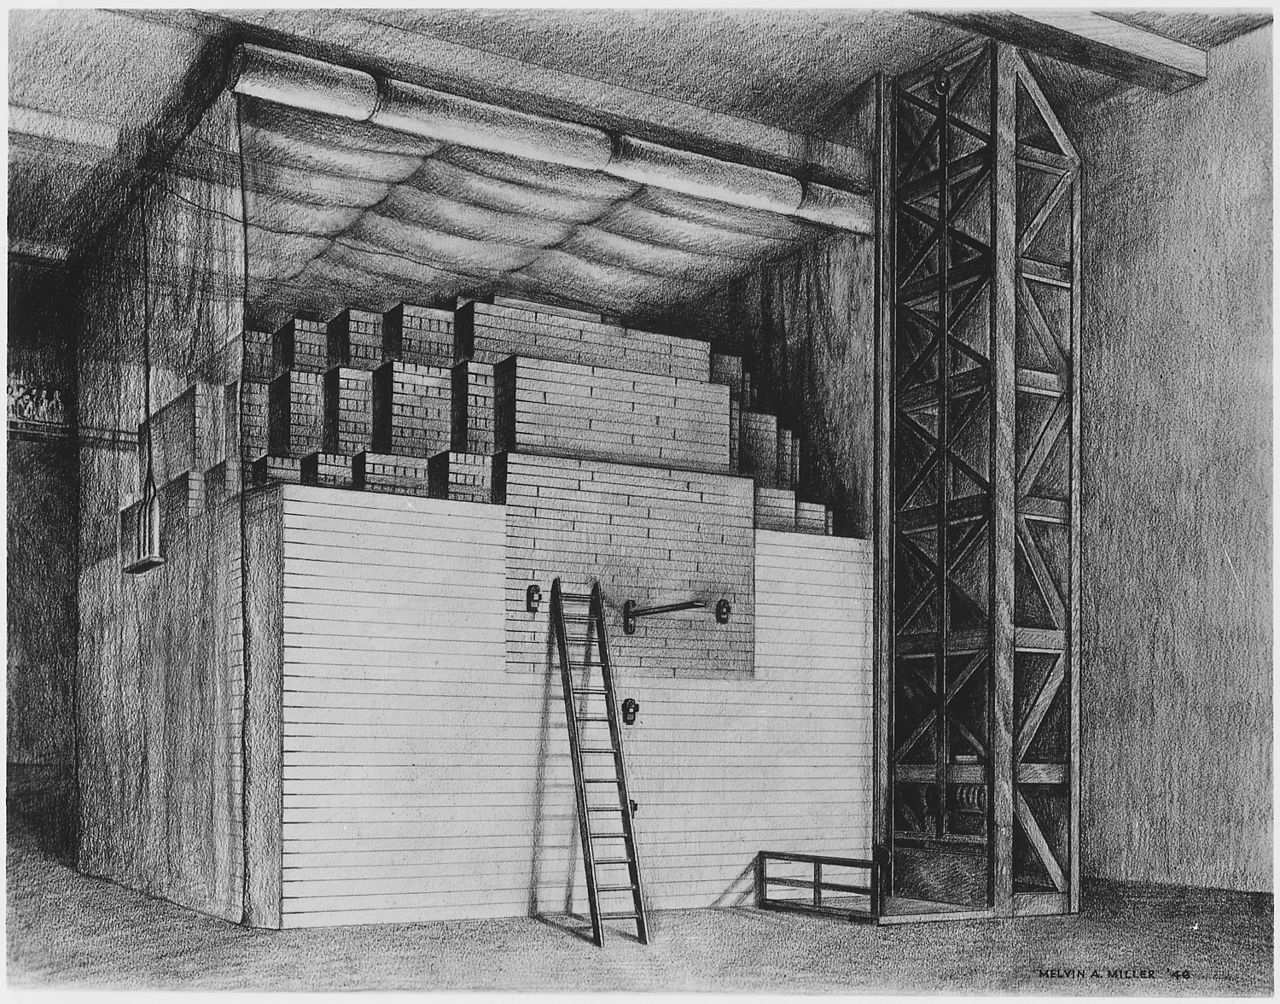 Chicago Pile-1 (CP-1) был первым в мире искусственным ядерным реактором. 